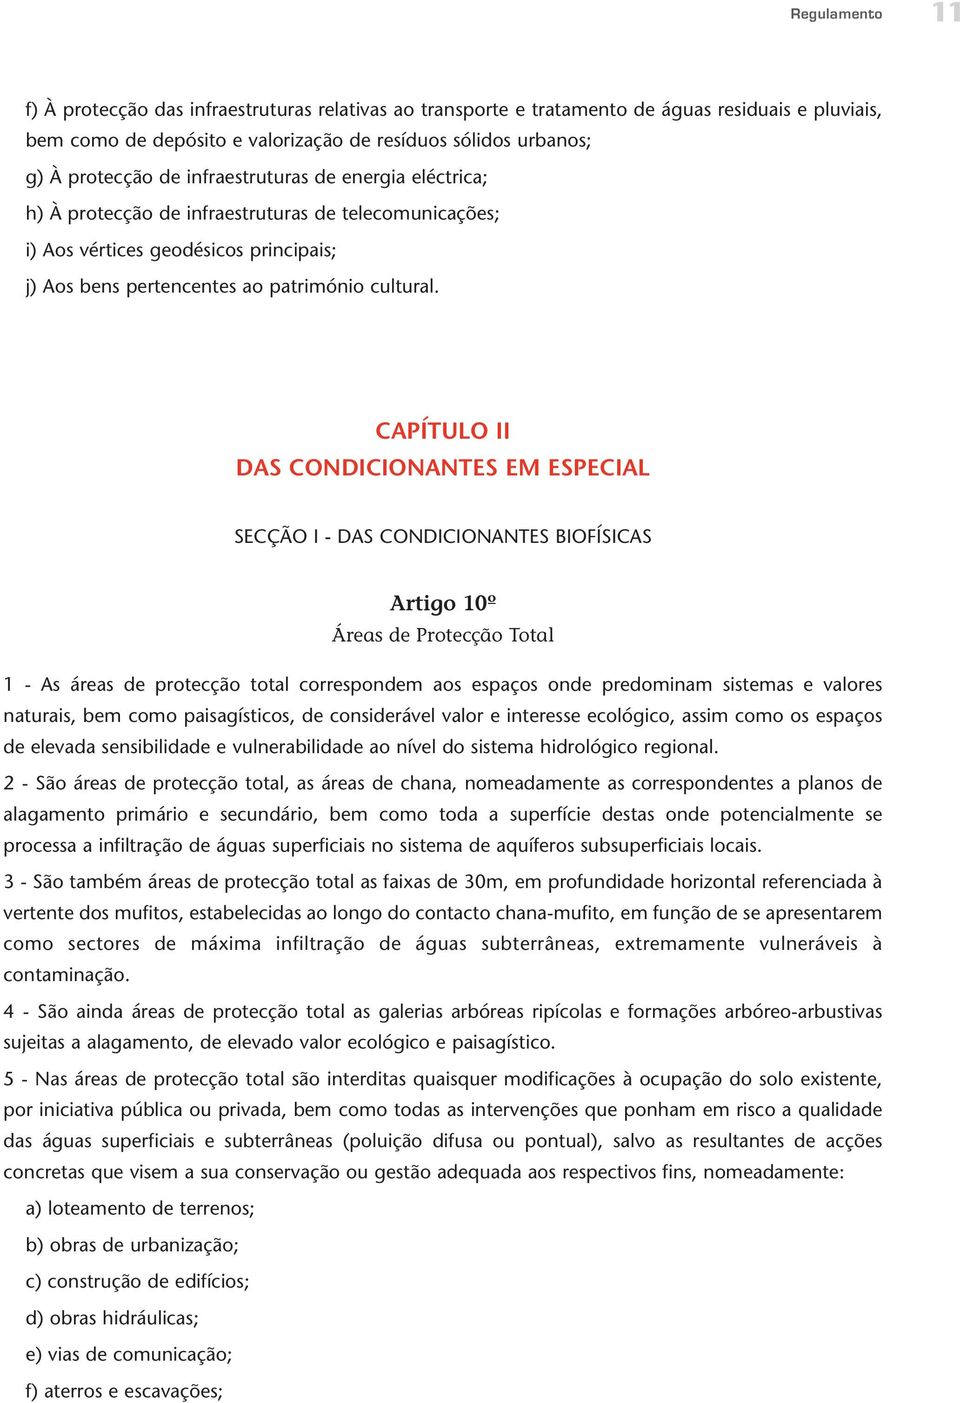 CAPÍTULO II DAS CONDICIONANTES EM ESPECIAL SECÇÃO I - DAS CONDICIONANTES BIOFÍSICAS Artigo 10º Áreas de Protecção Total 1 - As áreas de protecção total correspondem aos espaços onde predominam